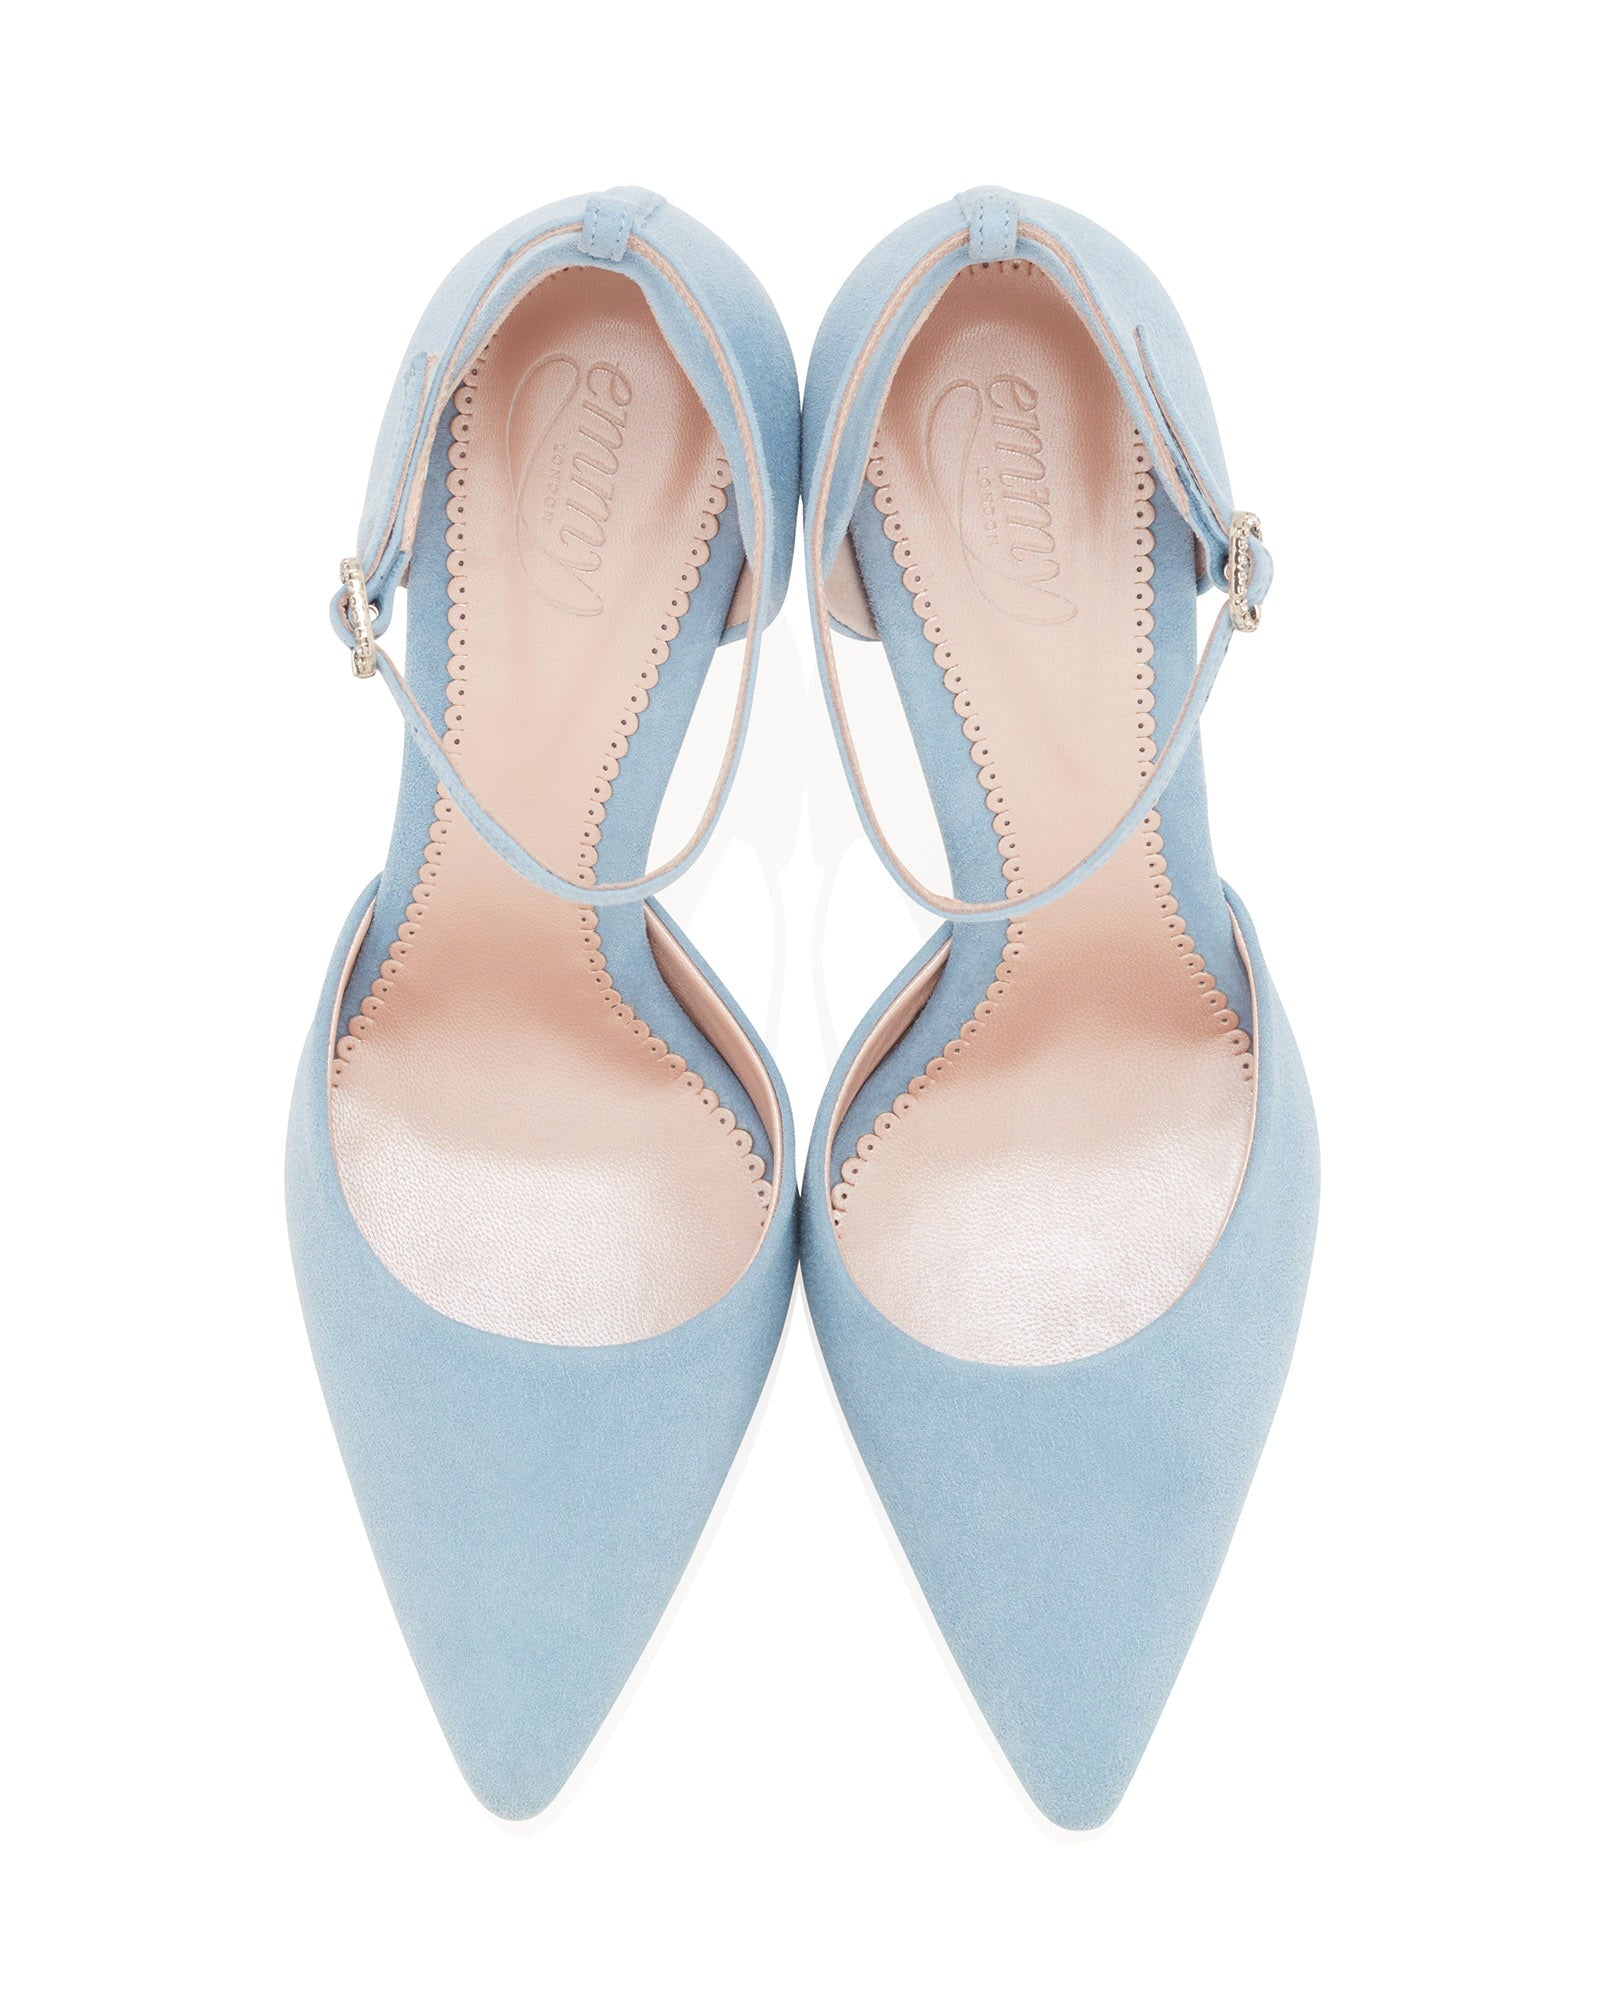 Harriet Powder Blue Bridal Shoe Light Blue Suede Bridal Shoes  image